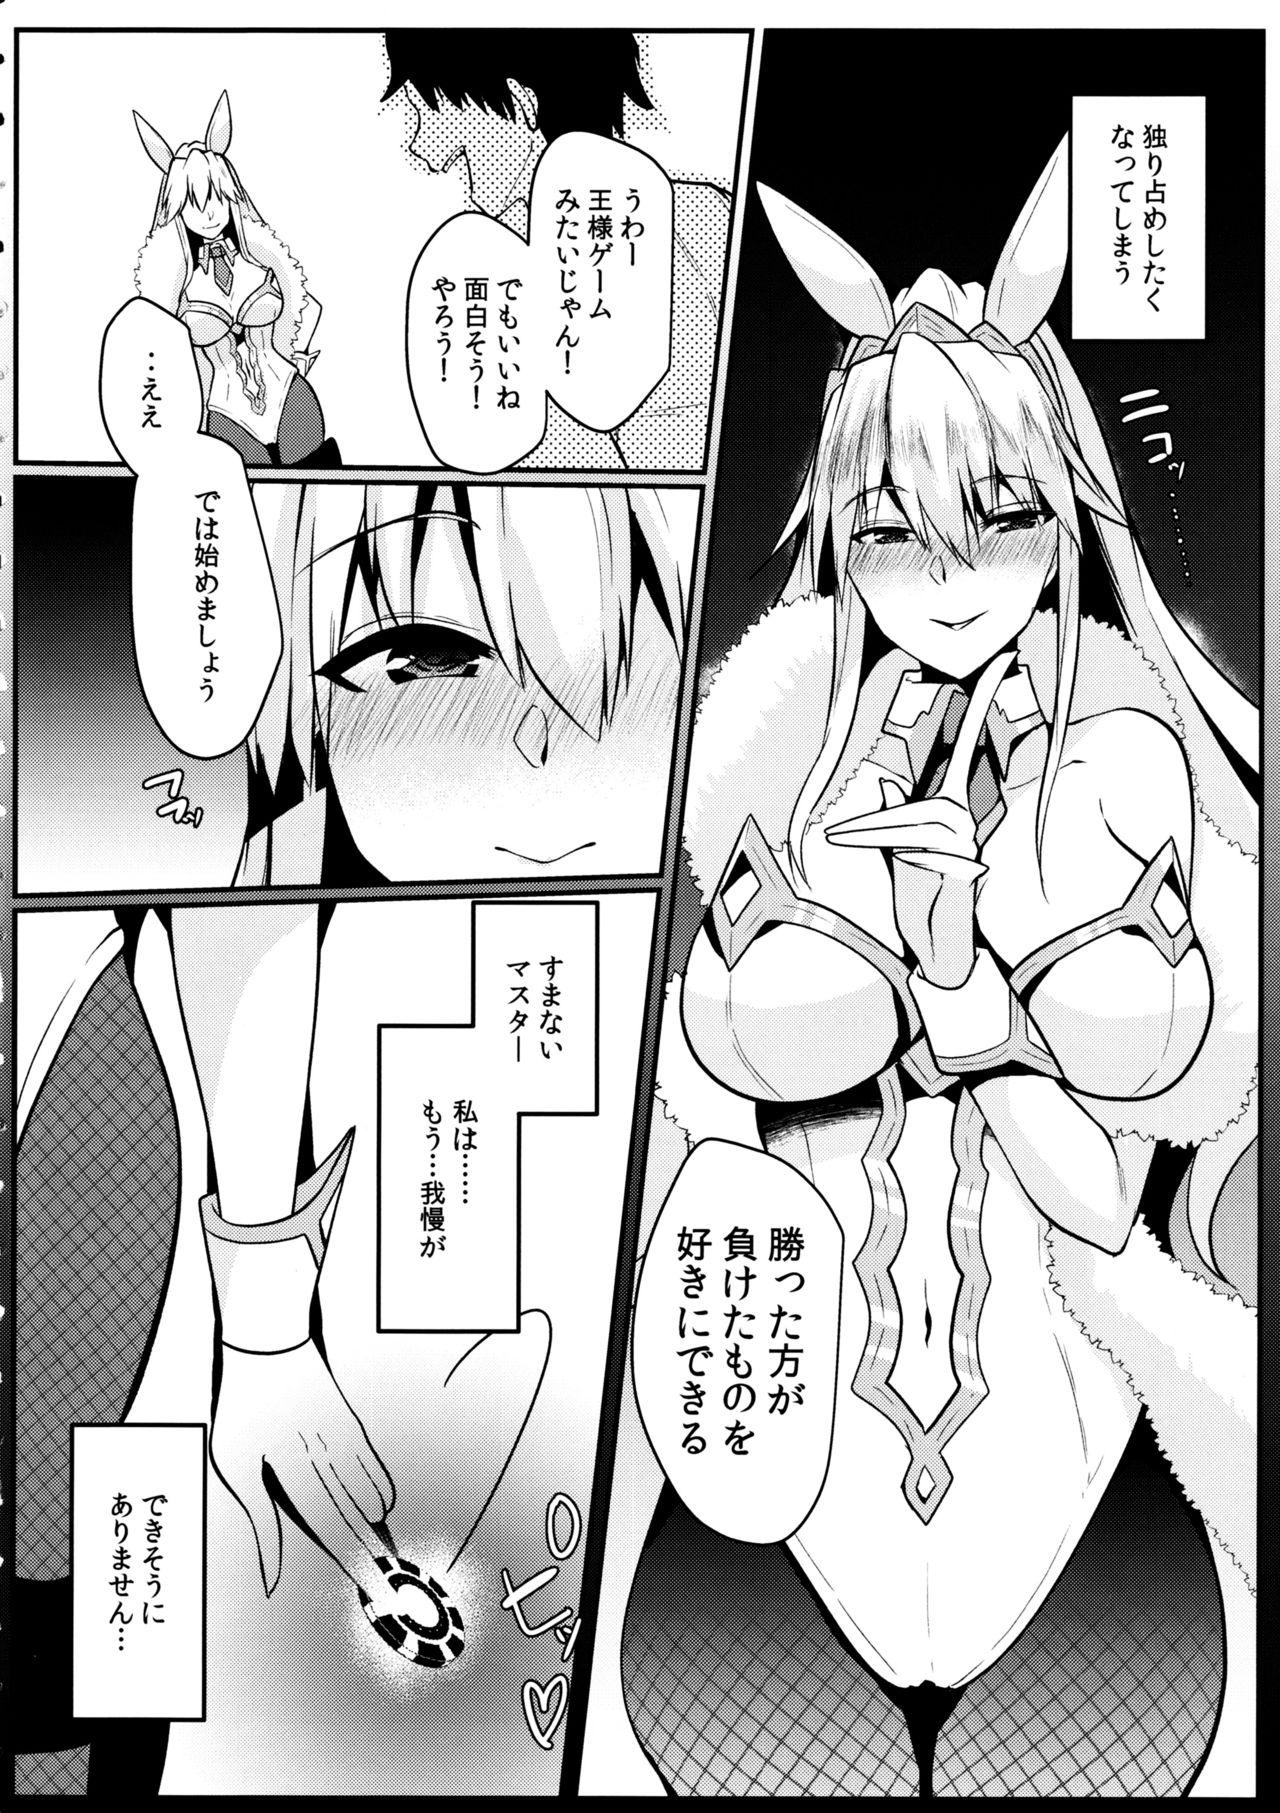 Bunny ni Natta Artoria wa Seiyoku ga Sugoi 4